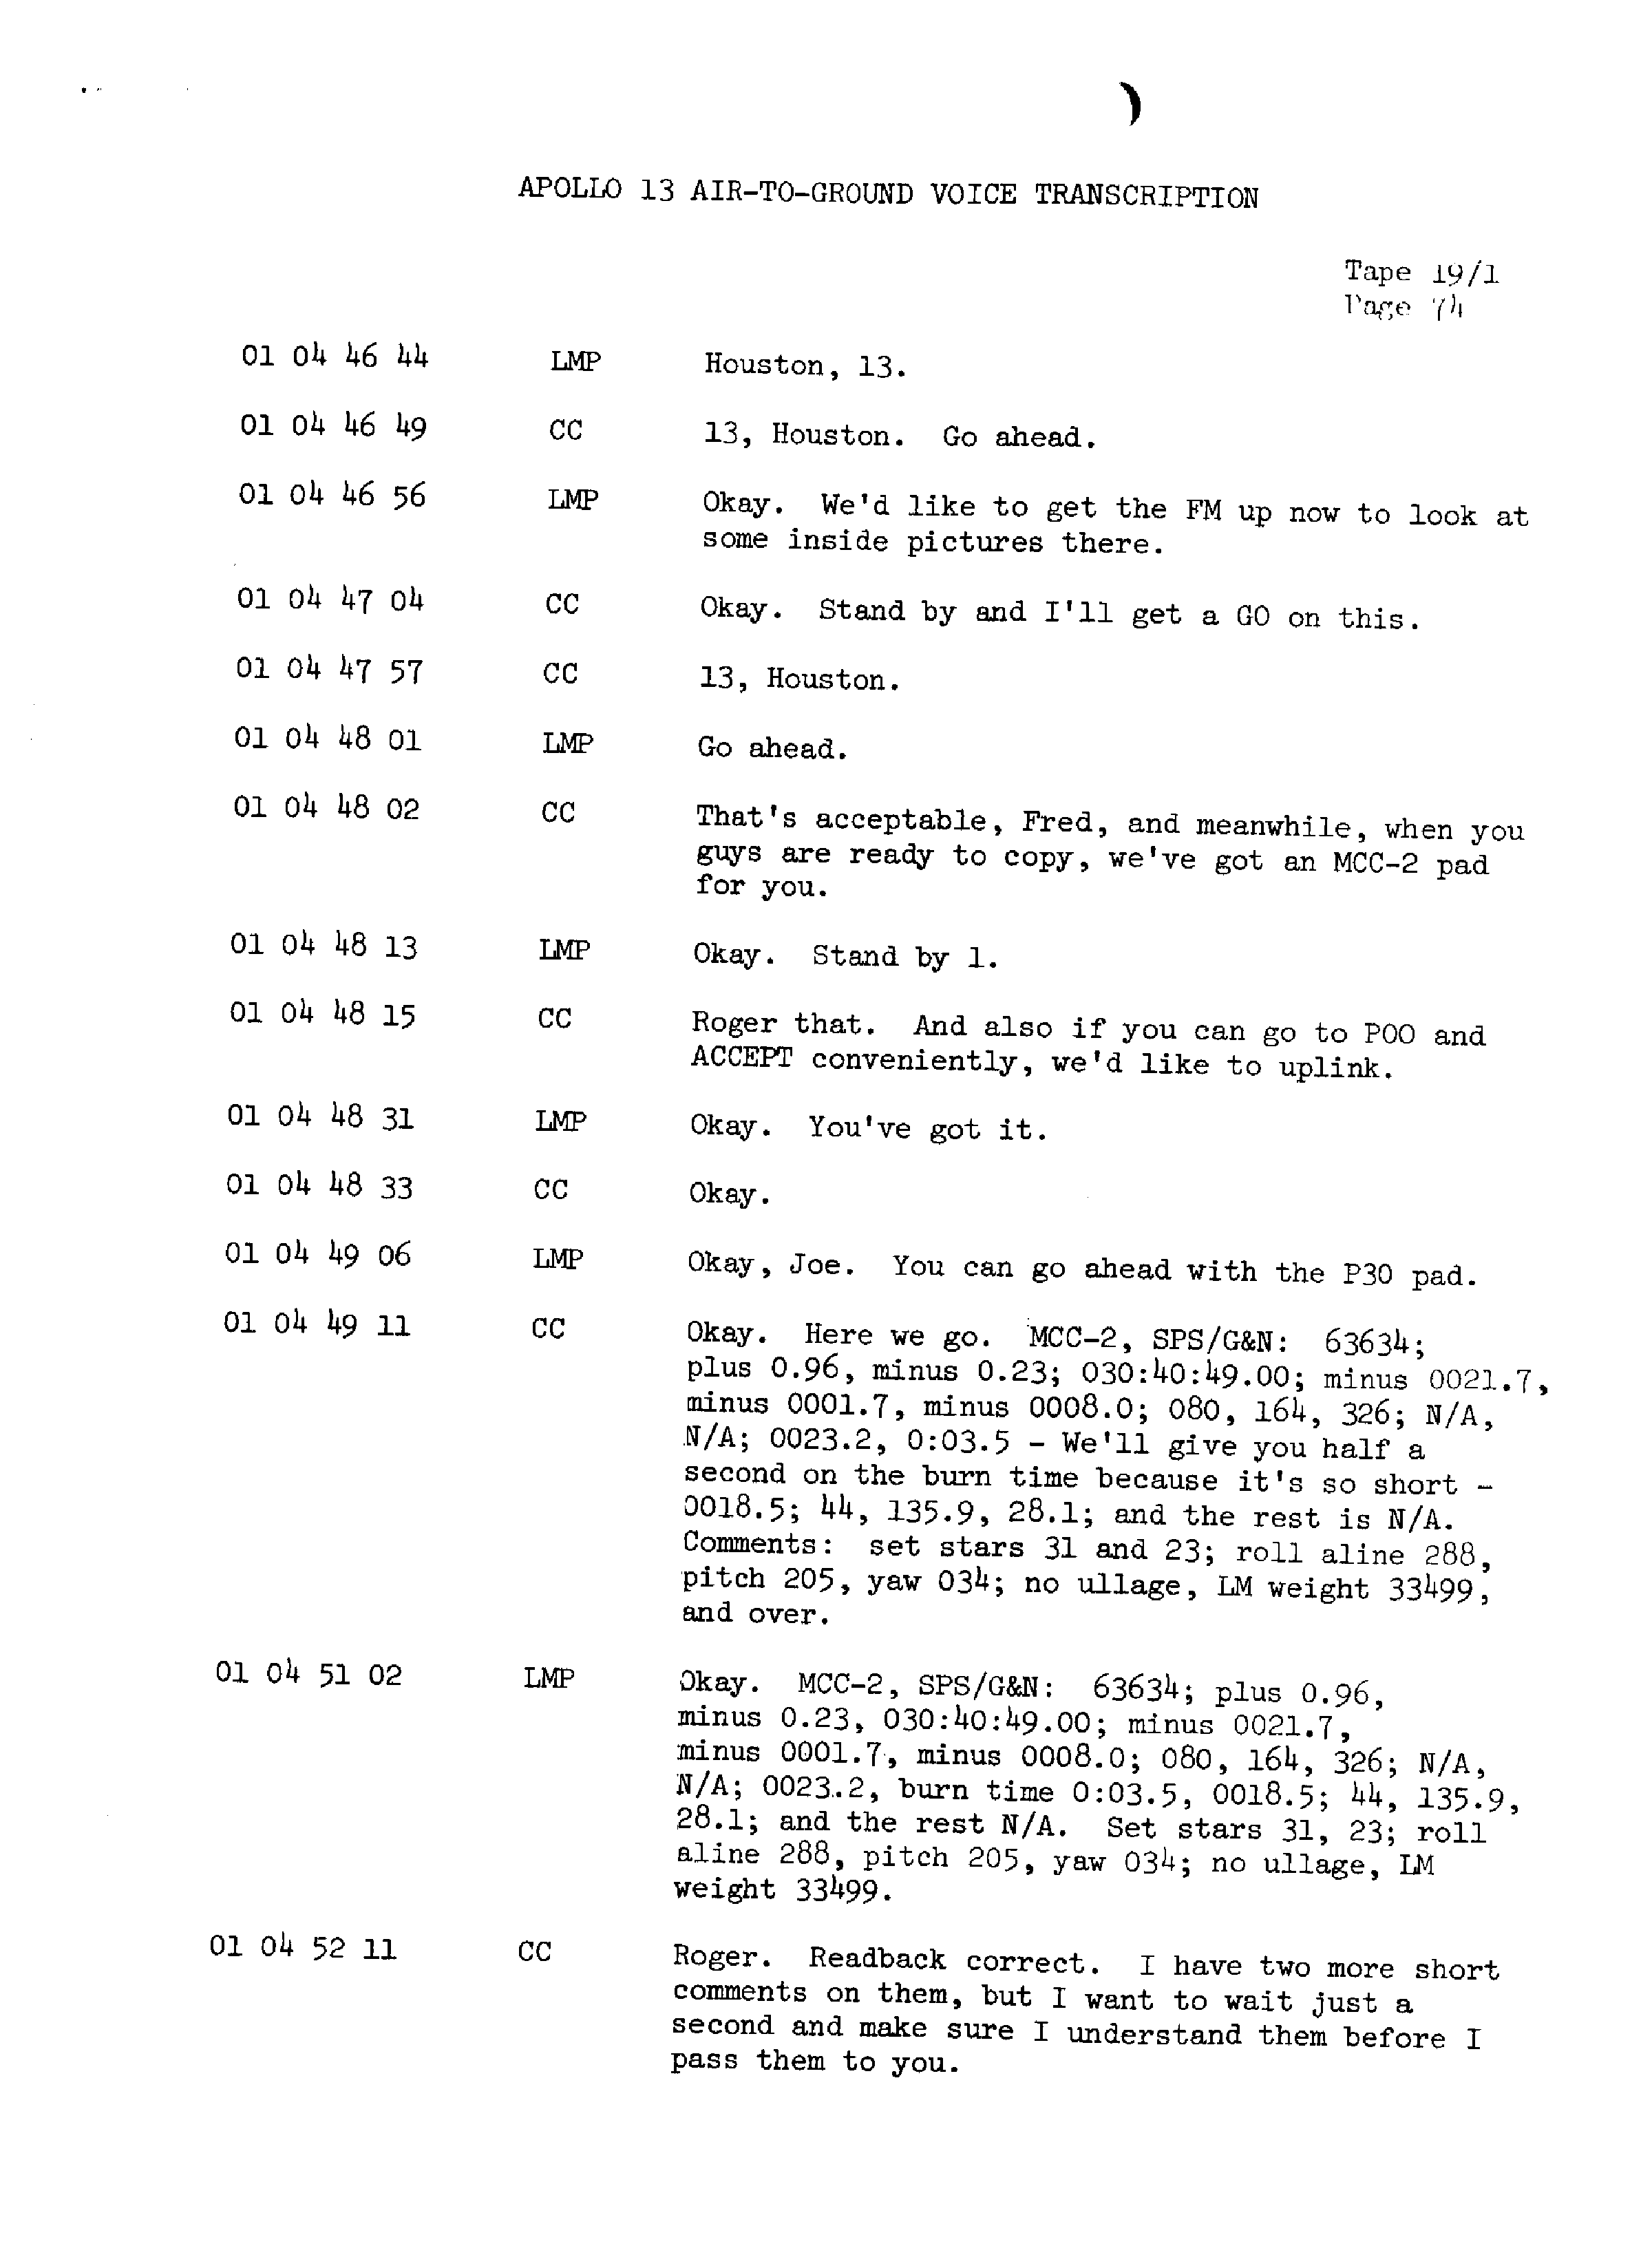 Page 81 of Apollo 13’s original transcript